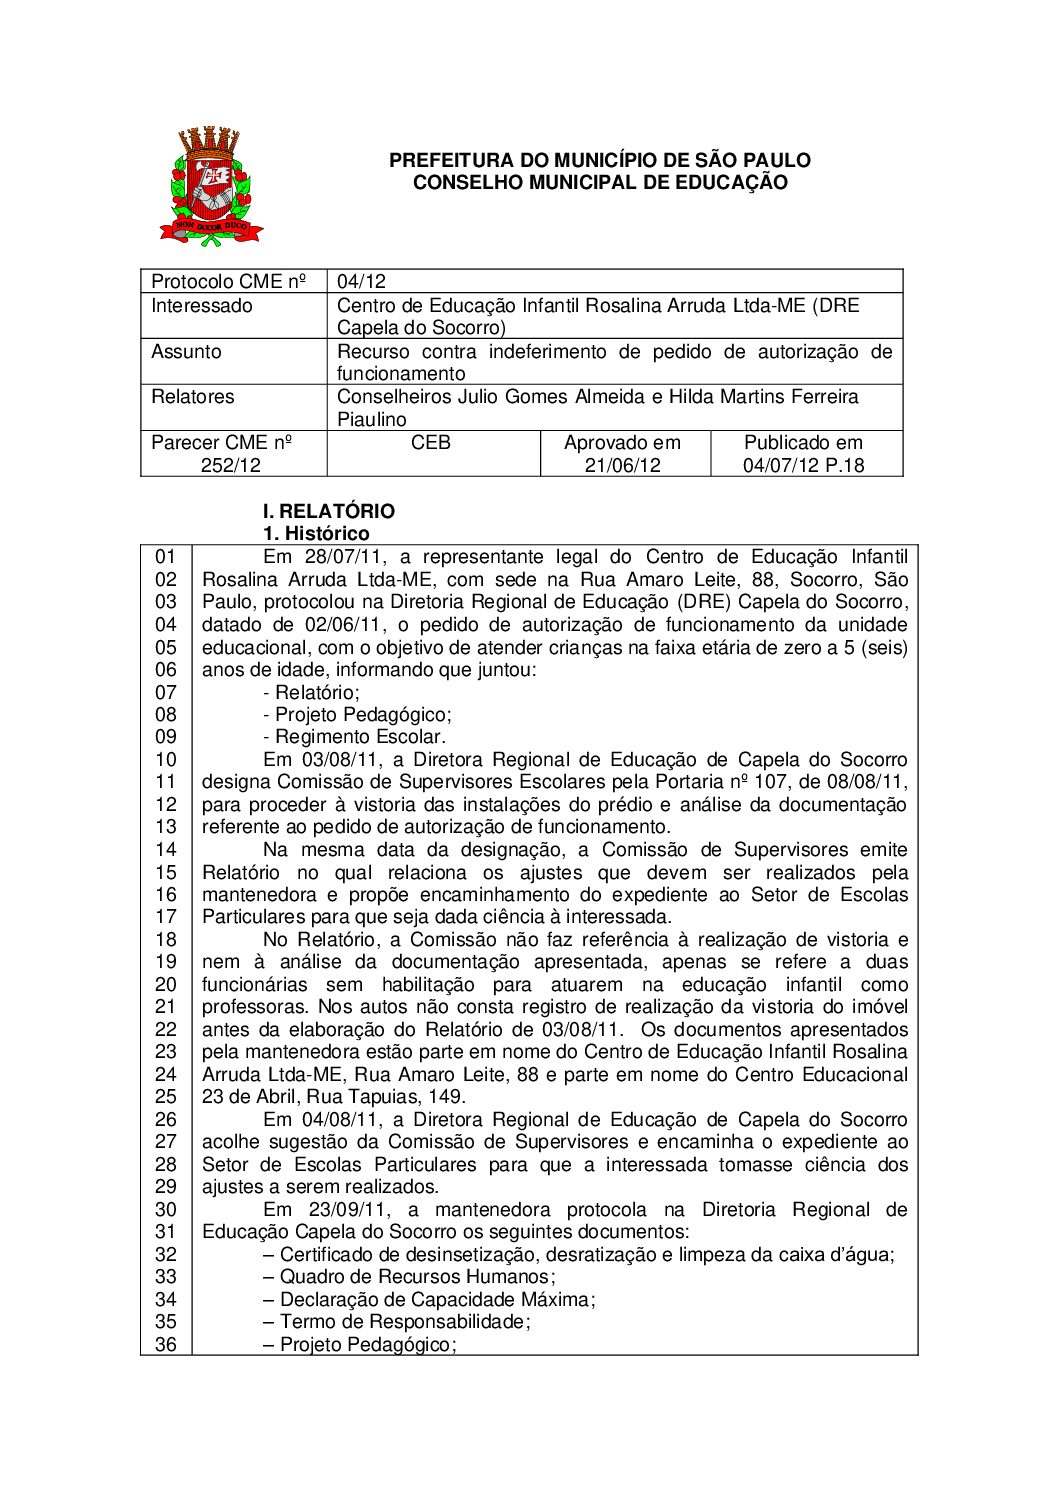 Parecer CME nº 252/2012 - Centro de Educação Infantil Rosalina Arruda Ltda-ME (DRE Capela do Socorro) - Recurso contra indeferimento de pedido de autorização de funcionamento